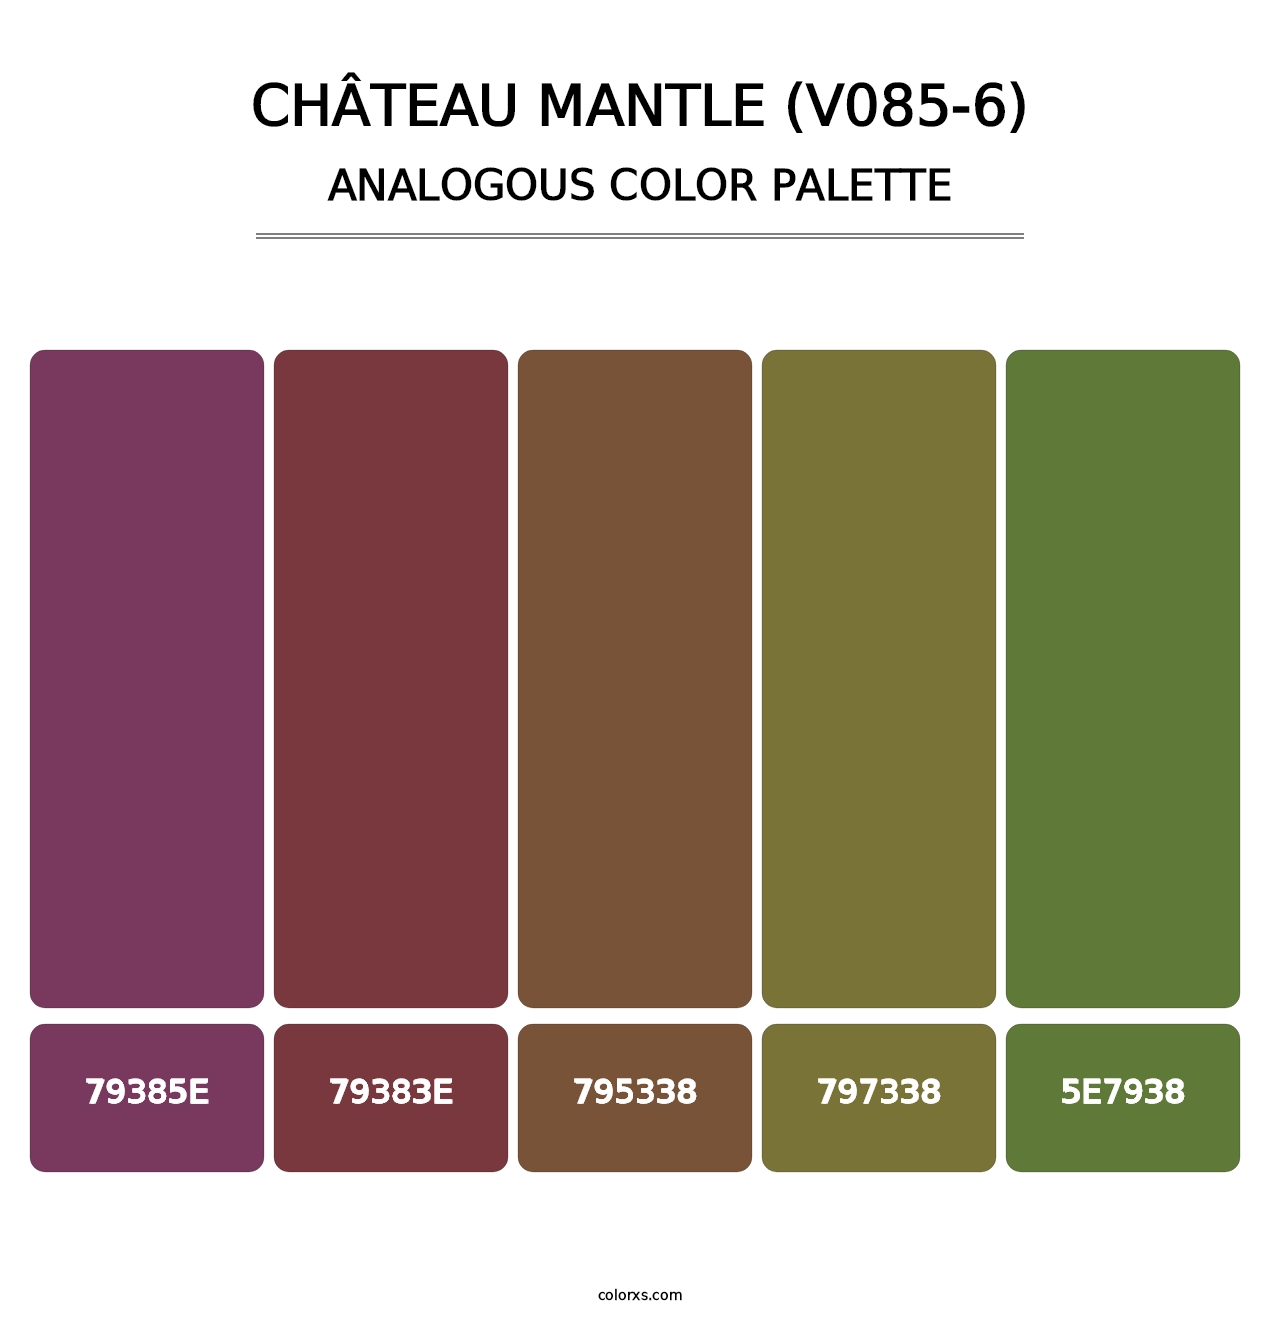 Château Mantle (V085-6) - Analogous Color Palette